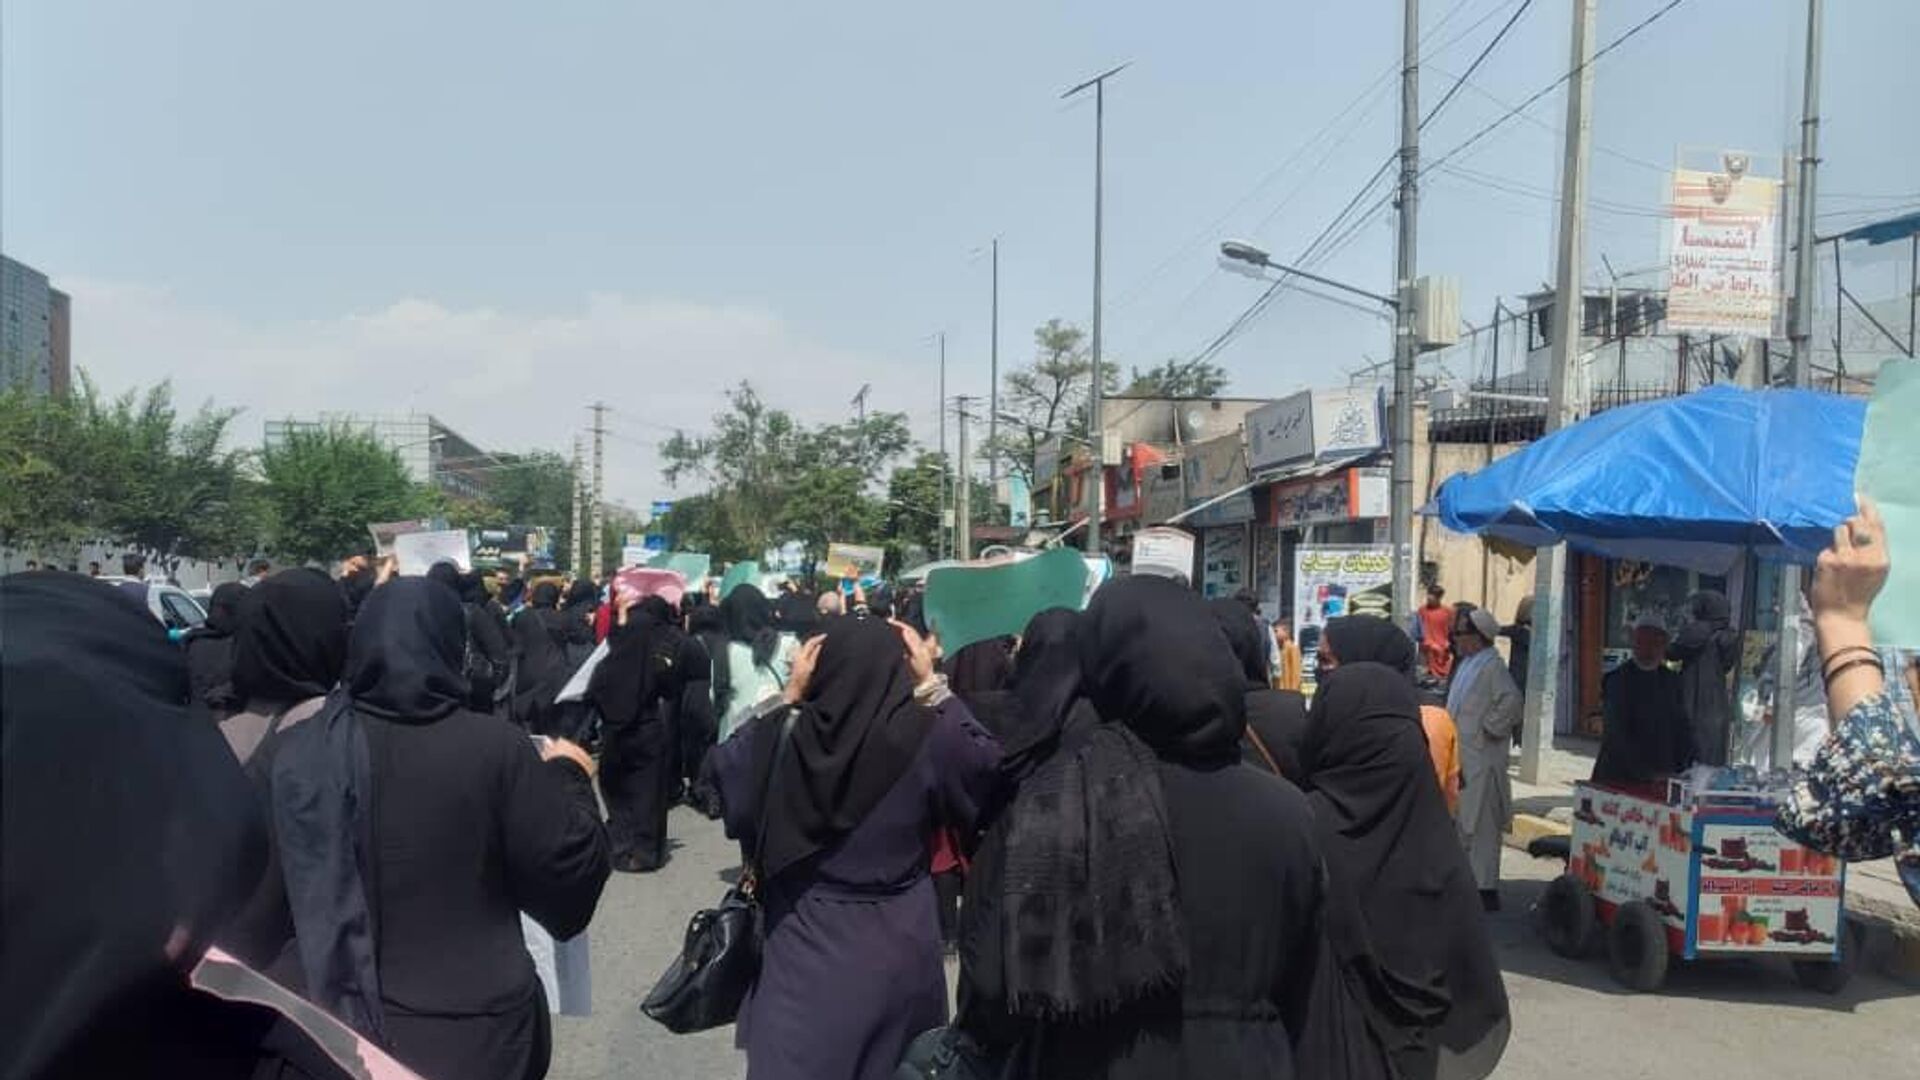   اعتراض زنان در کابل با گلوله طالبان پاسخ داده شد   - اسپوتنیک افغانستان  , 1920, 01.09.2022